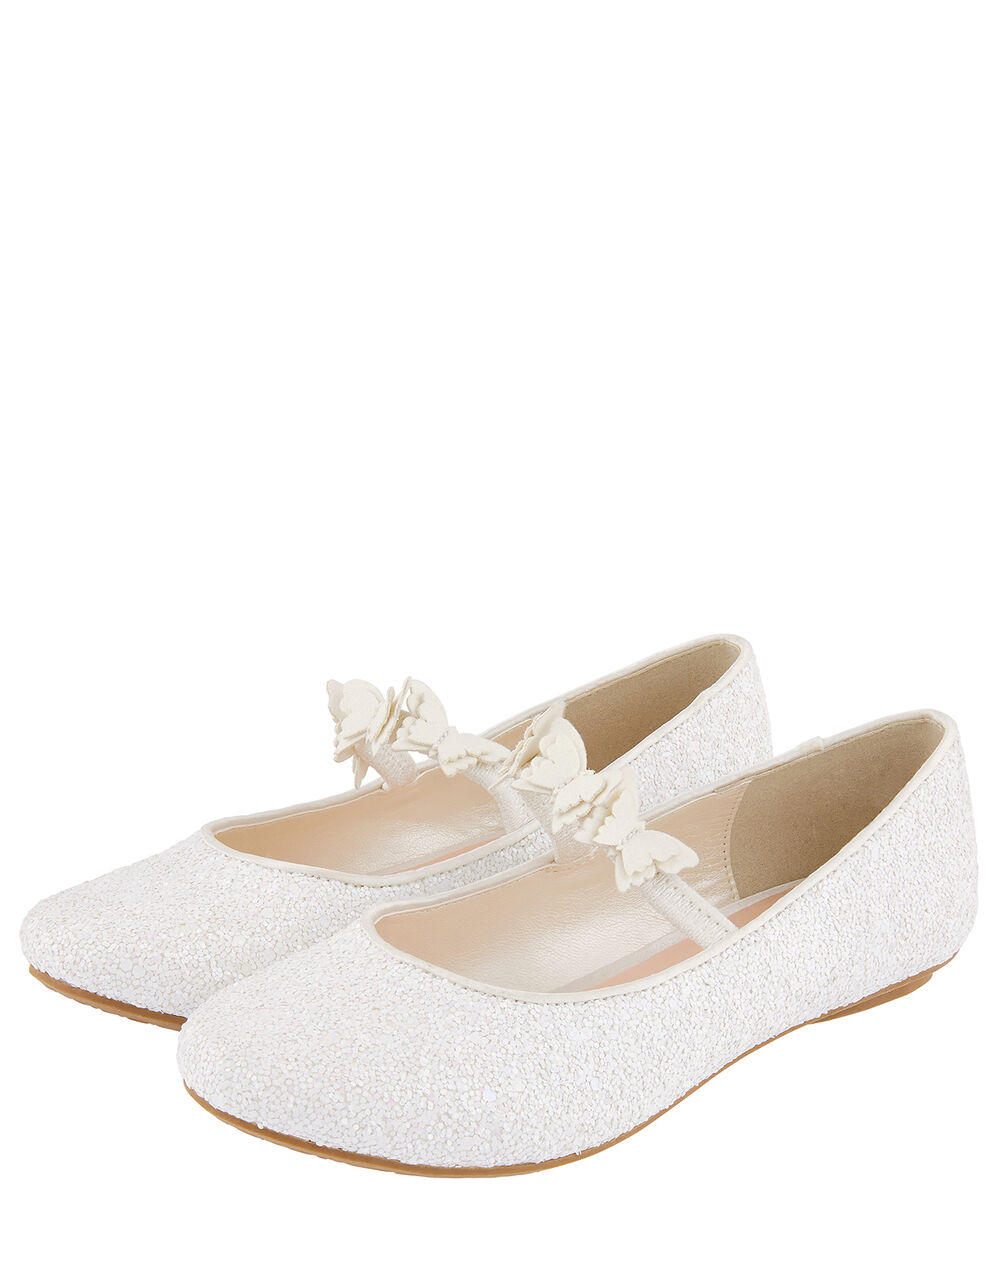 Children Children's Shoes & Sandals | Glittery Butterfly Ballerina Flats Ivory - TN08169